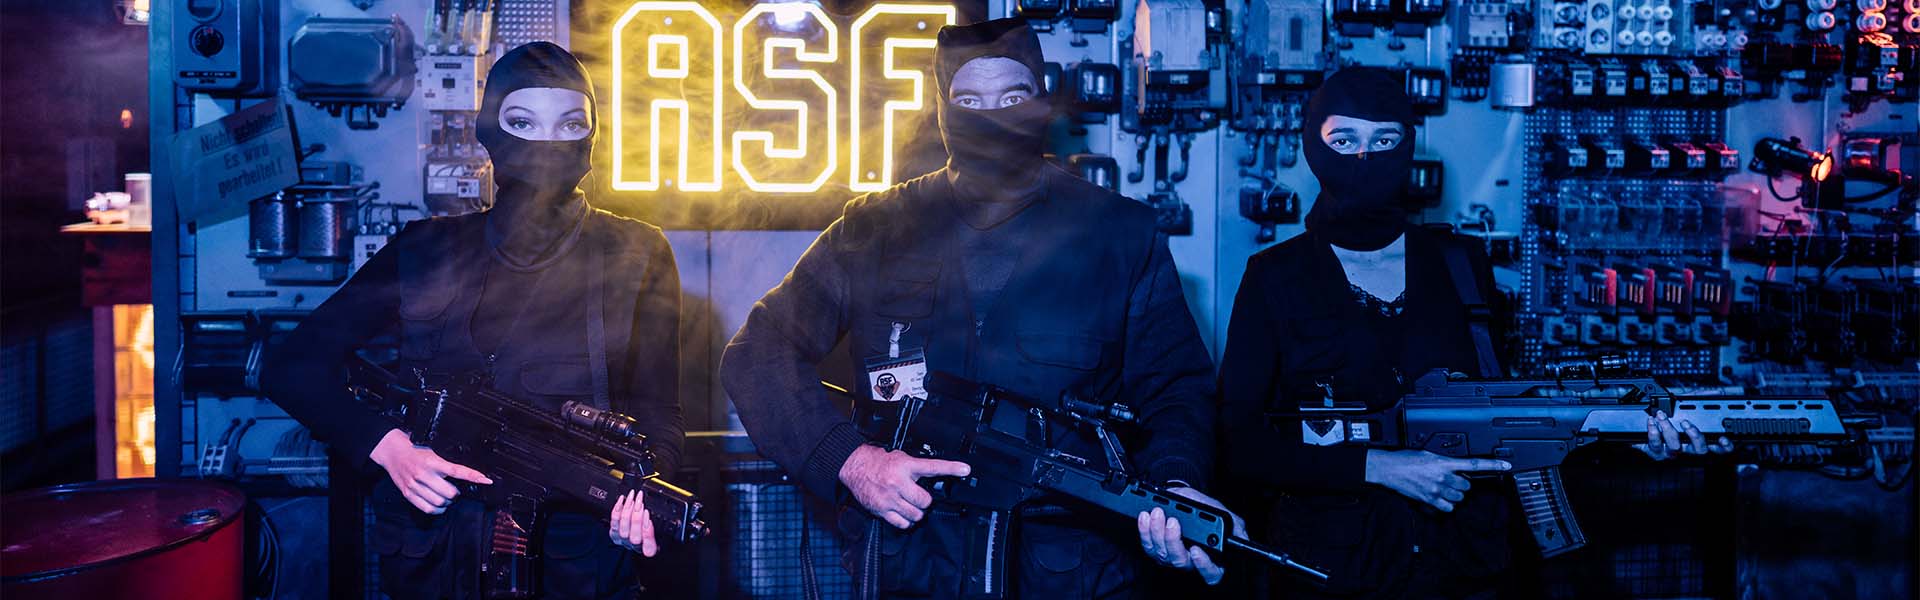 Drei bewaffnete ASF-Agenten